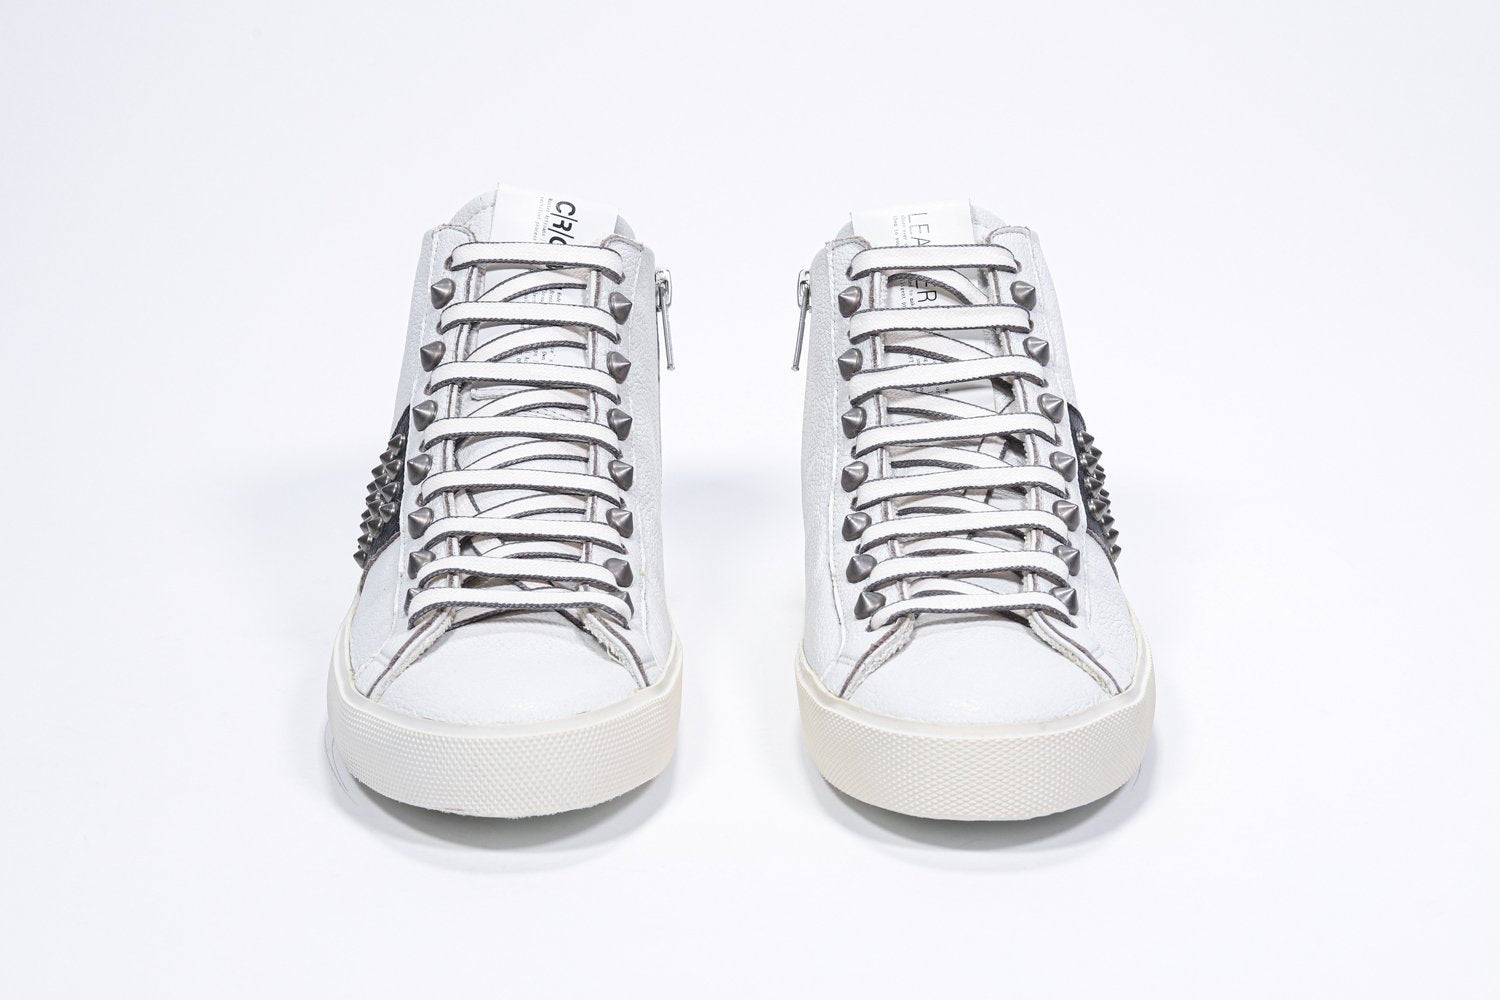 Vue de face d'une paire de chaussures blanches et noires sneaker. Tige en cuir avec clous, fermeture à glissière interne et semelle en caoutchouc vintage.